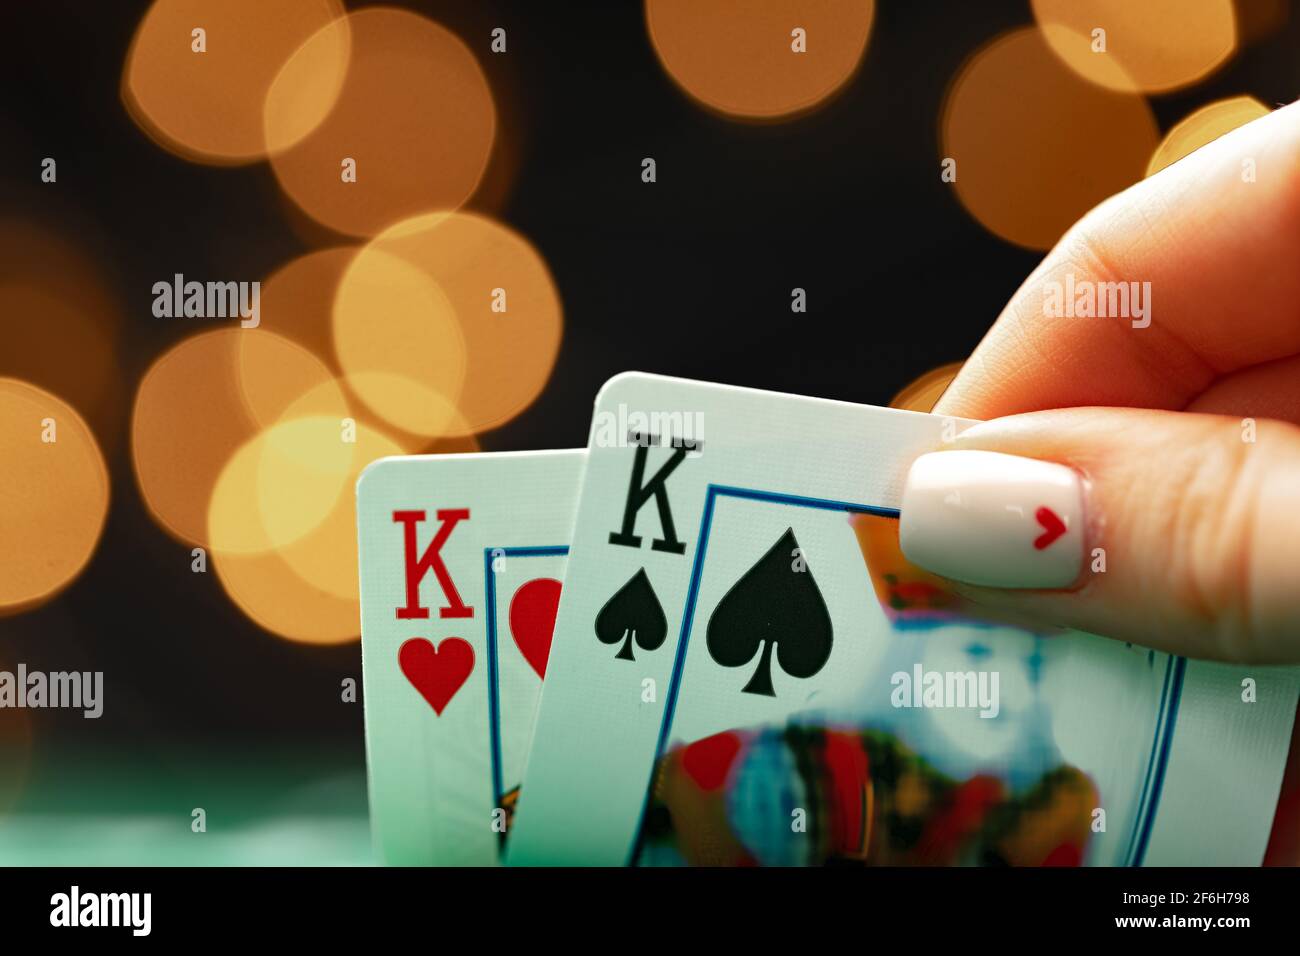 Weibliche Hand hält Spielkarten gegen Bokeh Hintergrund Stockfoto